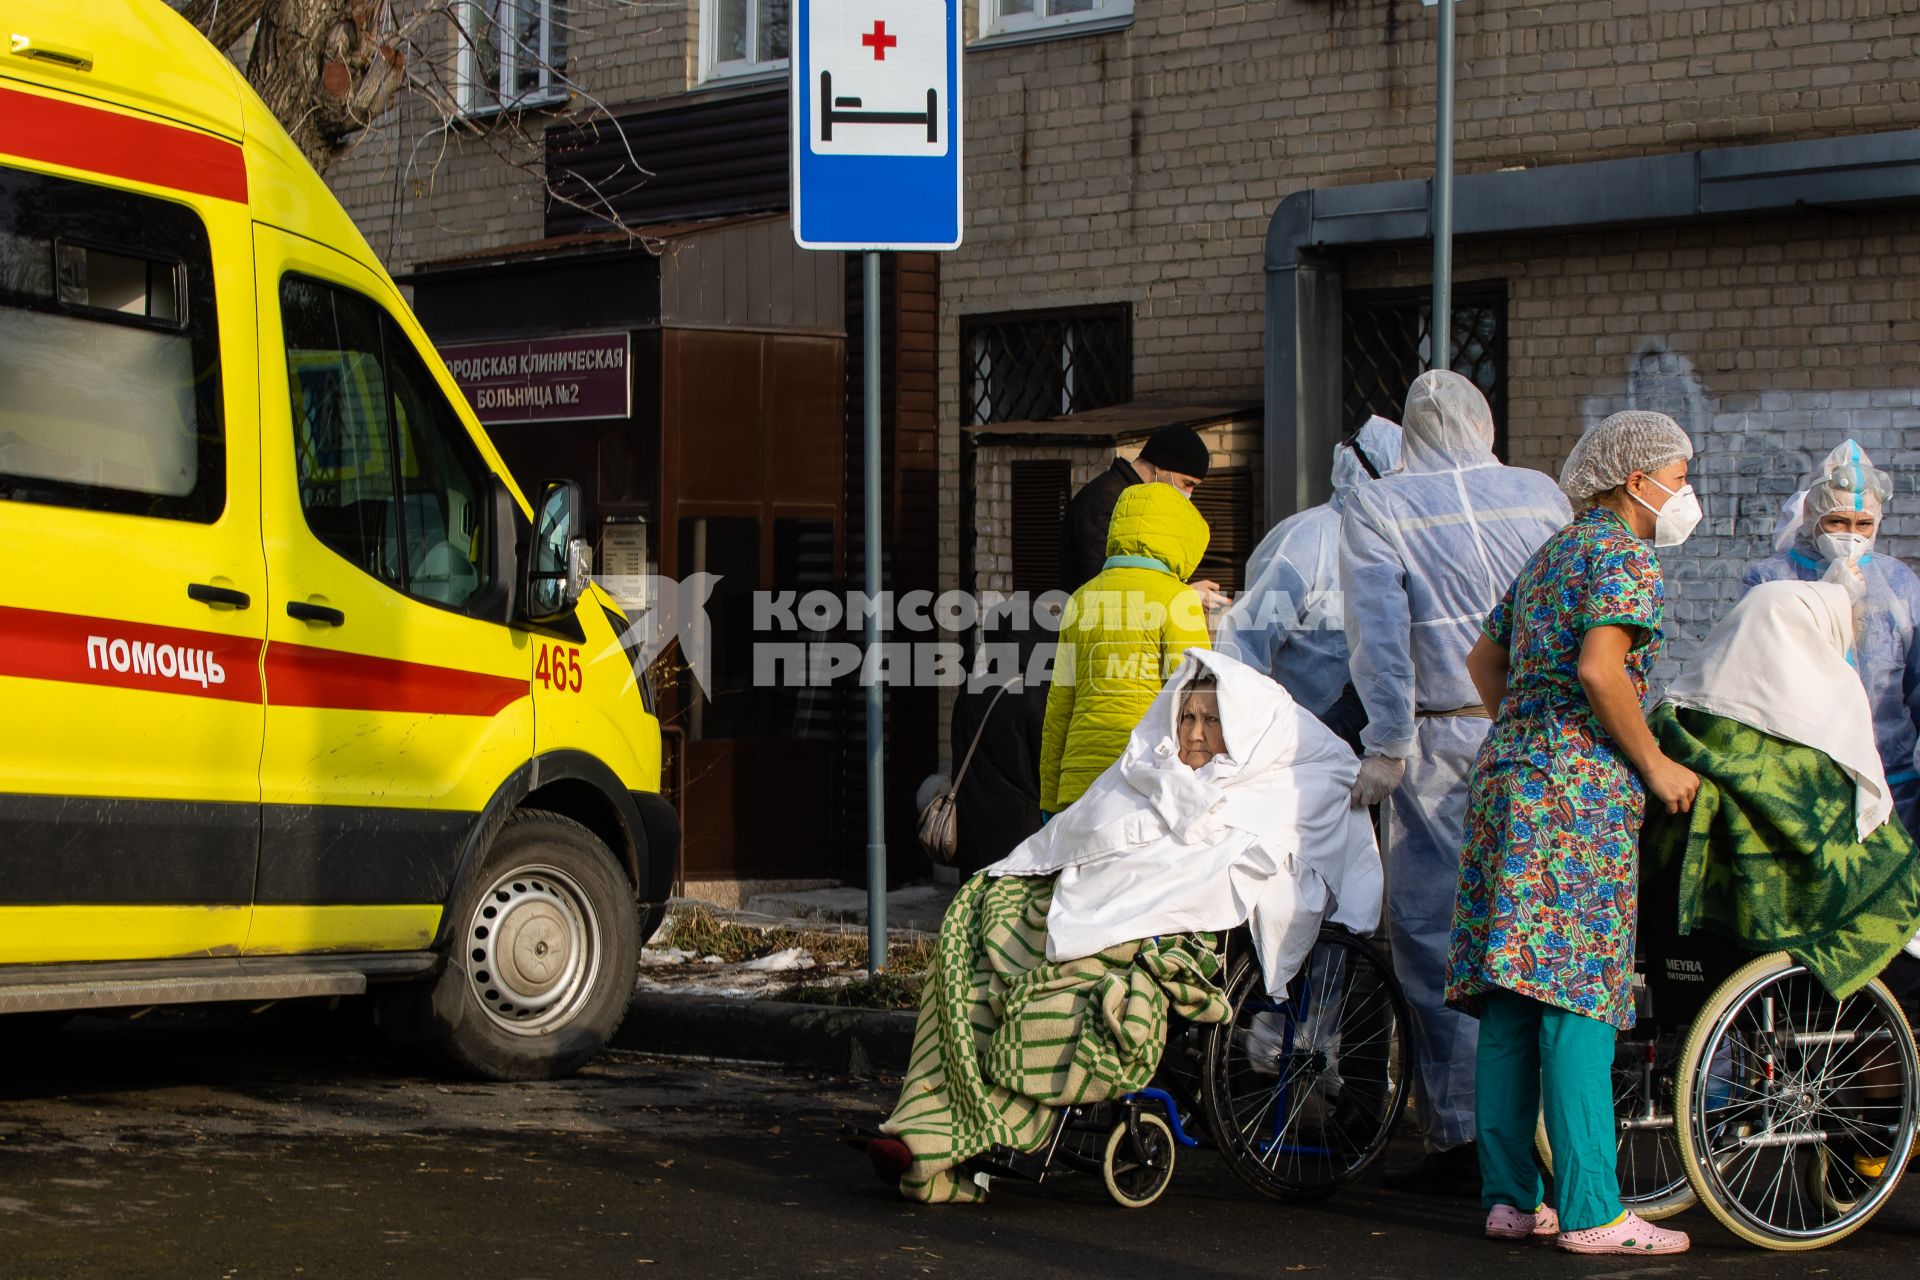 Челябинск. Эвакуация пациентов 2-й городской больницы, где из-за разгерметизации кислородного оборудования произошли взрыв и возгорание.